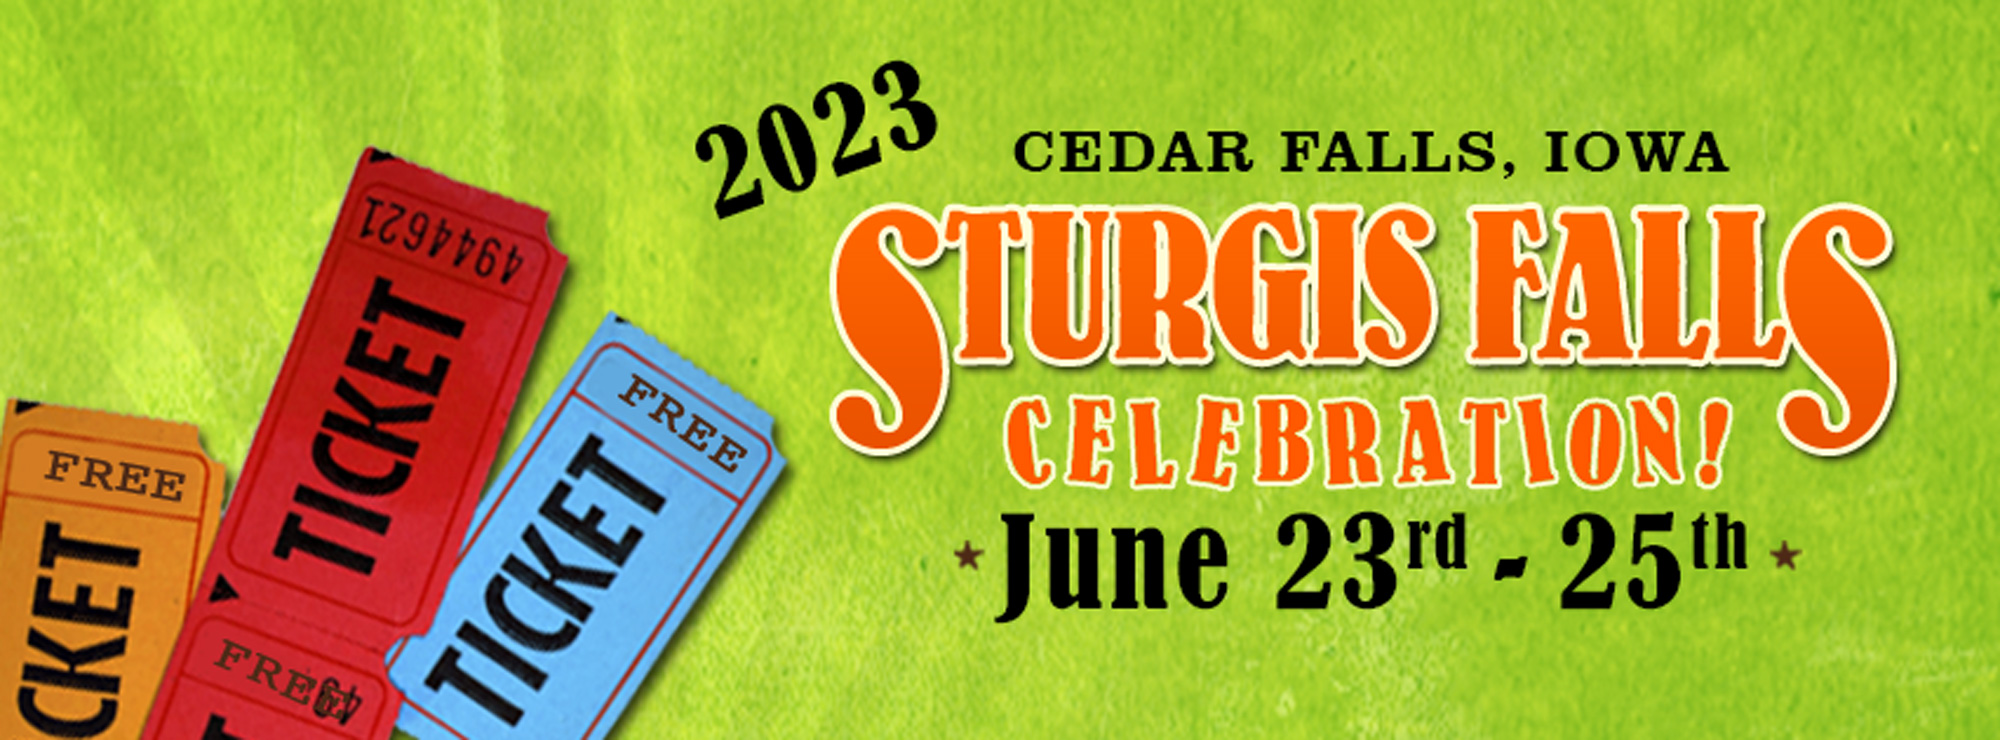 Sturgis Falls Celebration in Cedar Falls Iowa